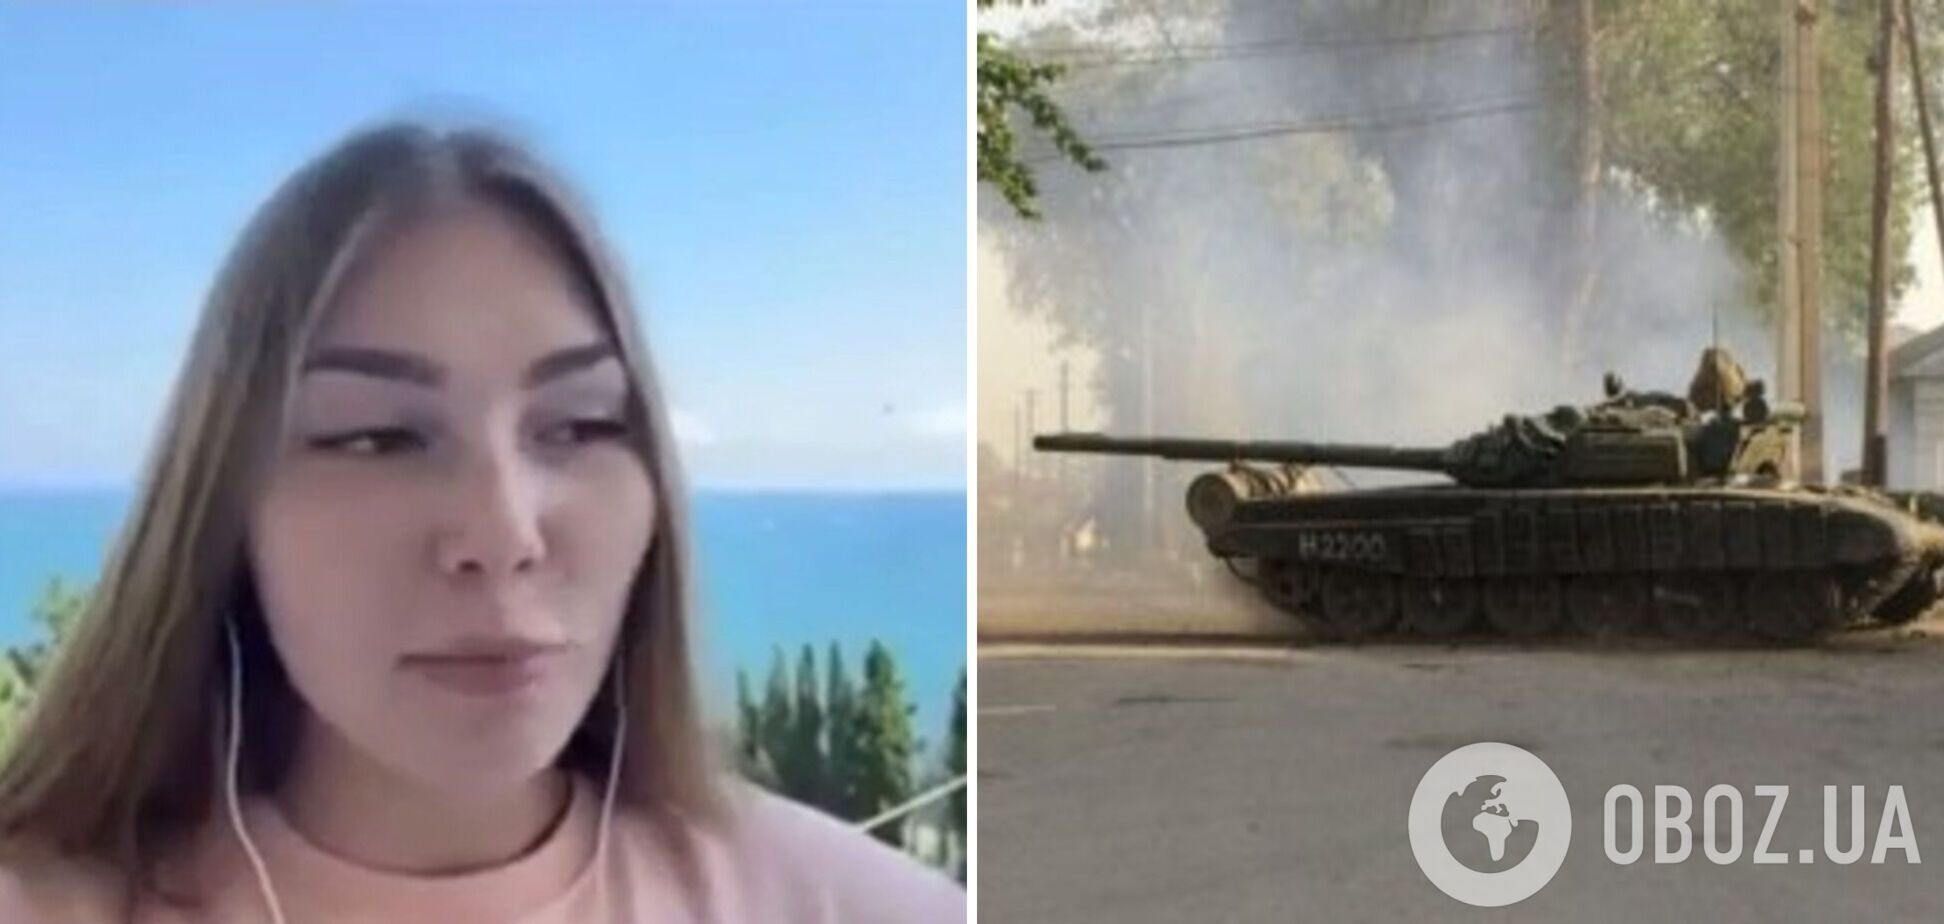 'В любой момент танк или БТР могут выехать на дорогу': пропагандистка расхвалила дорогу в Крым, но вспомнила о 'нюансах'. Видео